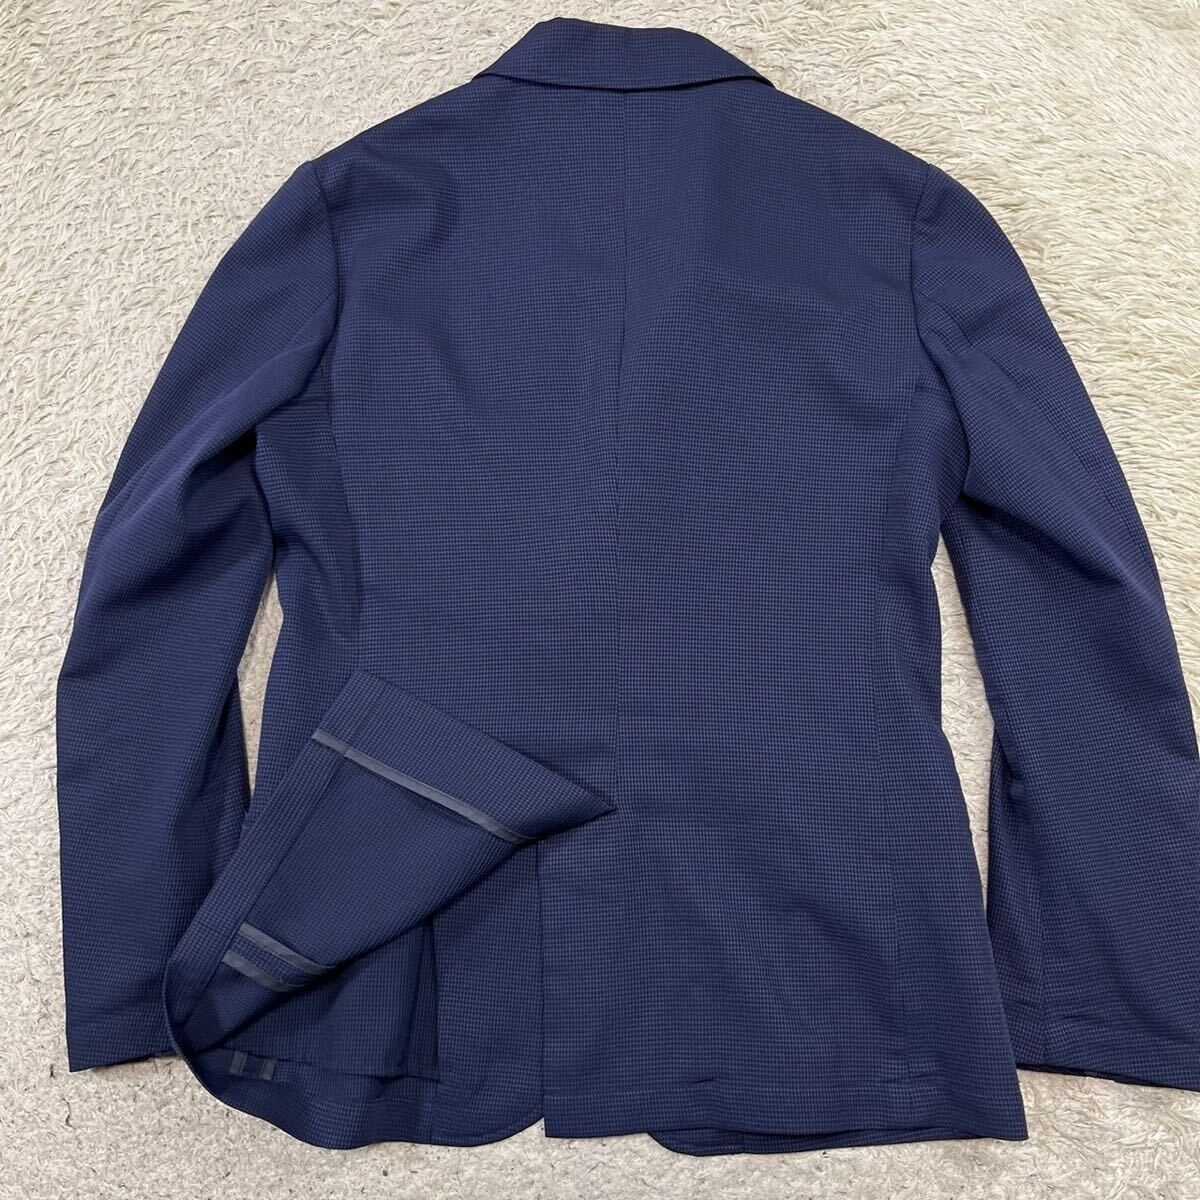  Katharine Hamnett London [ popular one put on ]KATHARINEHAMNETT tailored jacket summer jacket sia soccer blue navy 